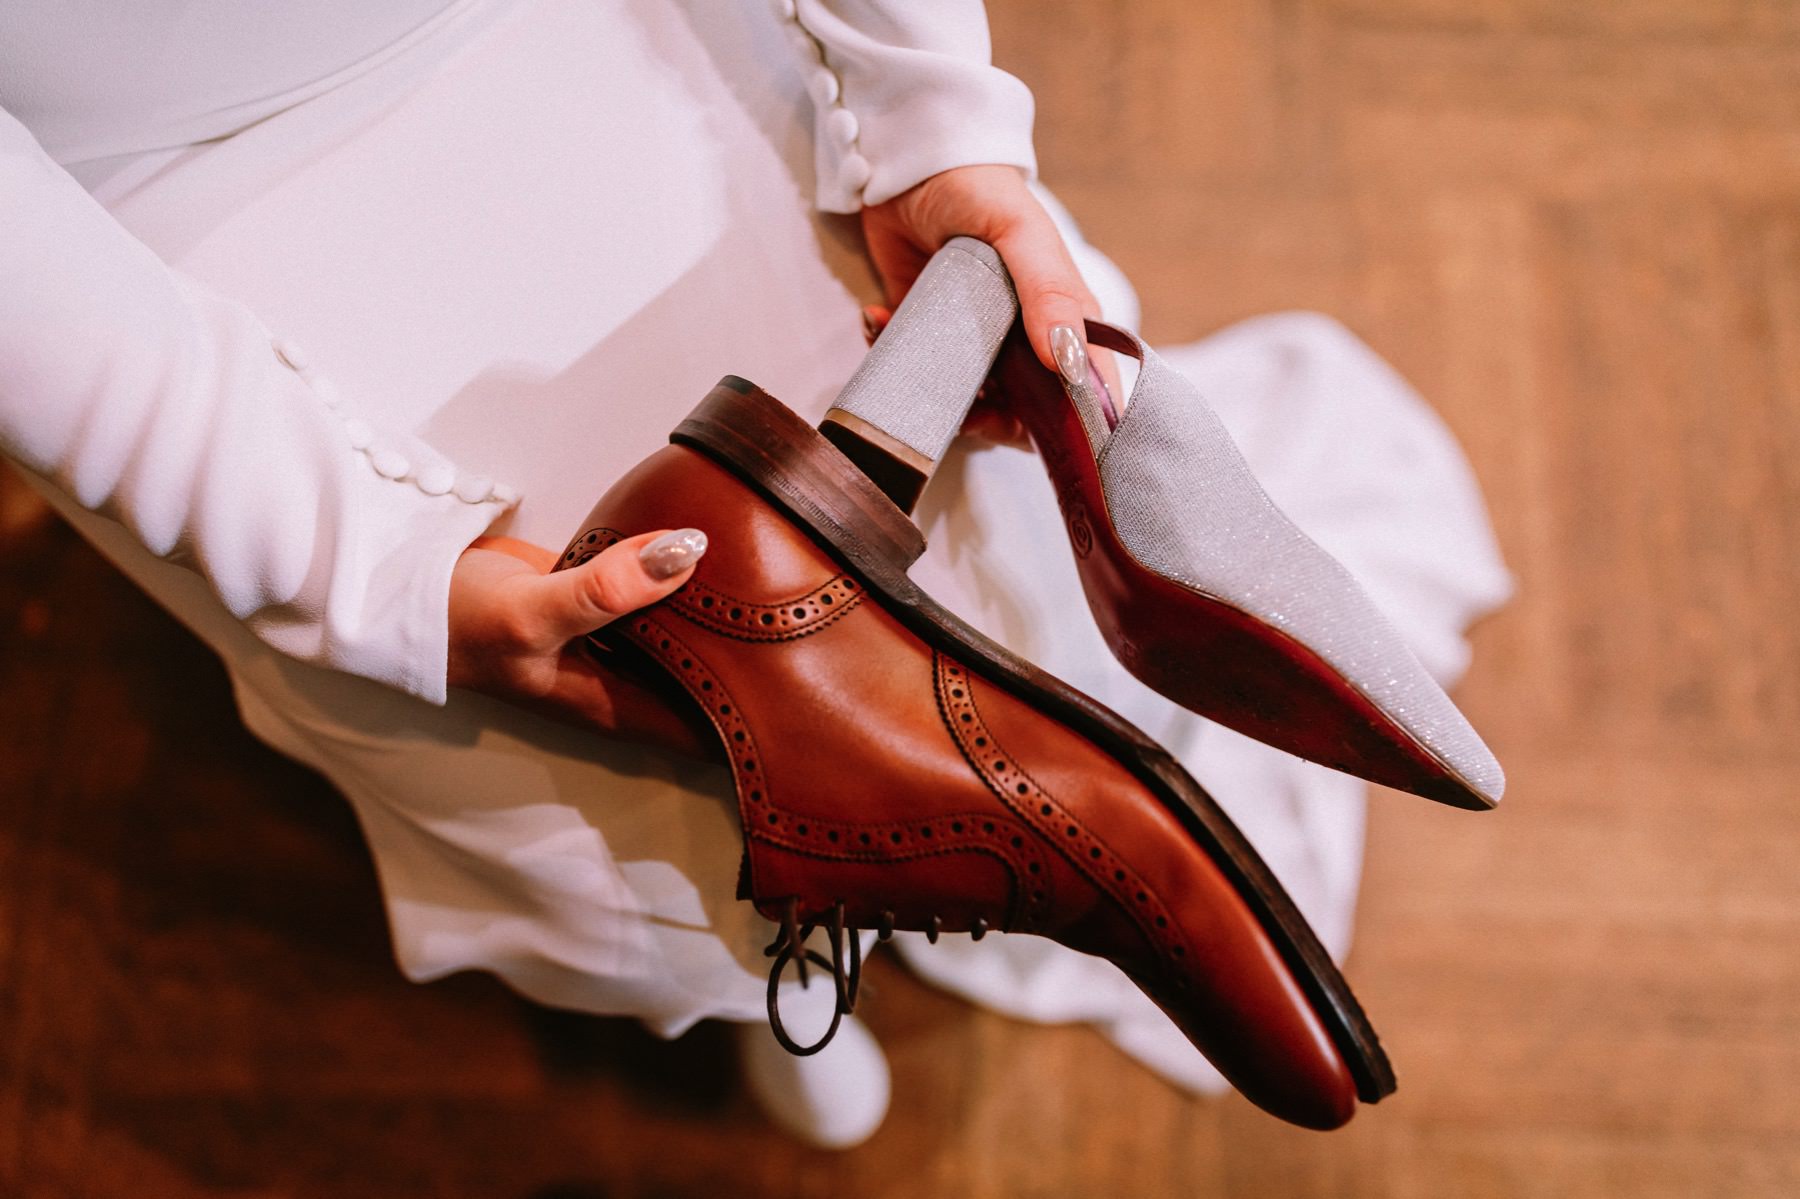 shoe game at wedding